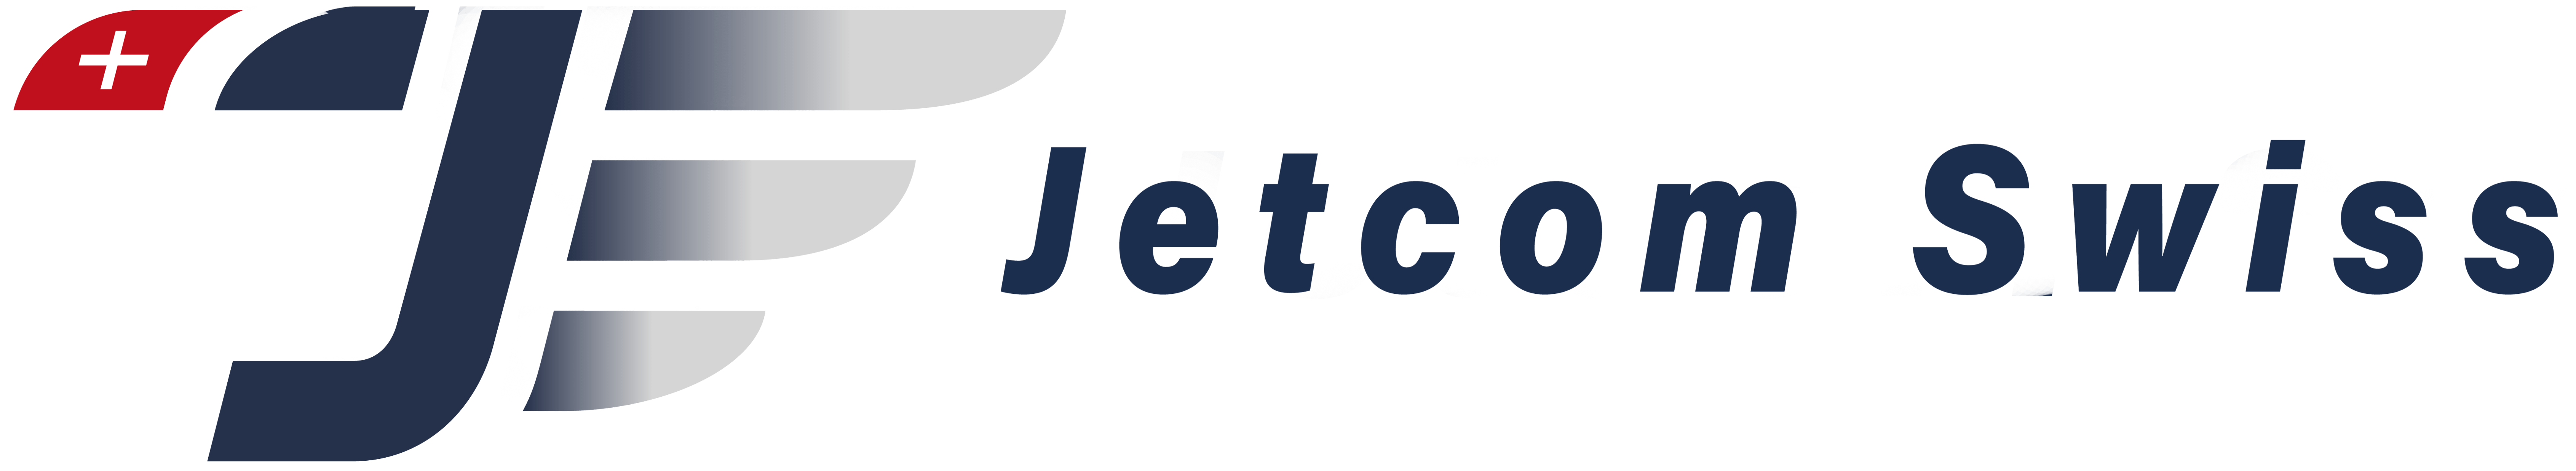 Scopri la storia del Rotor Jet Group, un'organizzazione internazionale dedicata al settore dell'aviazione civile, che offre servizi per la valutazione, acquisizione, manutenzione, gestione e brokeraggio di aeromobili. Conosciute per la cura e l'attenzione al dettaglio, le singole entità del gruppo offrono soluzioni personalizzate di qualità.